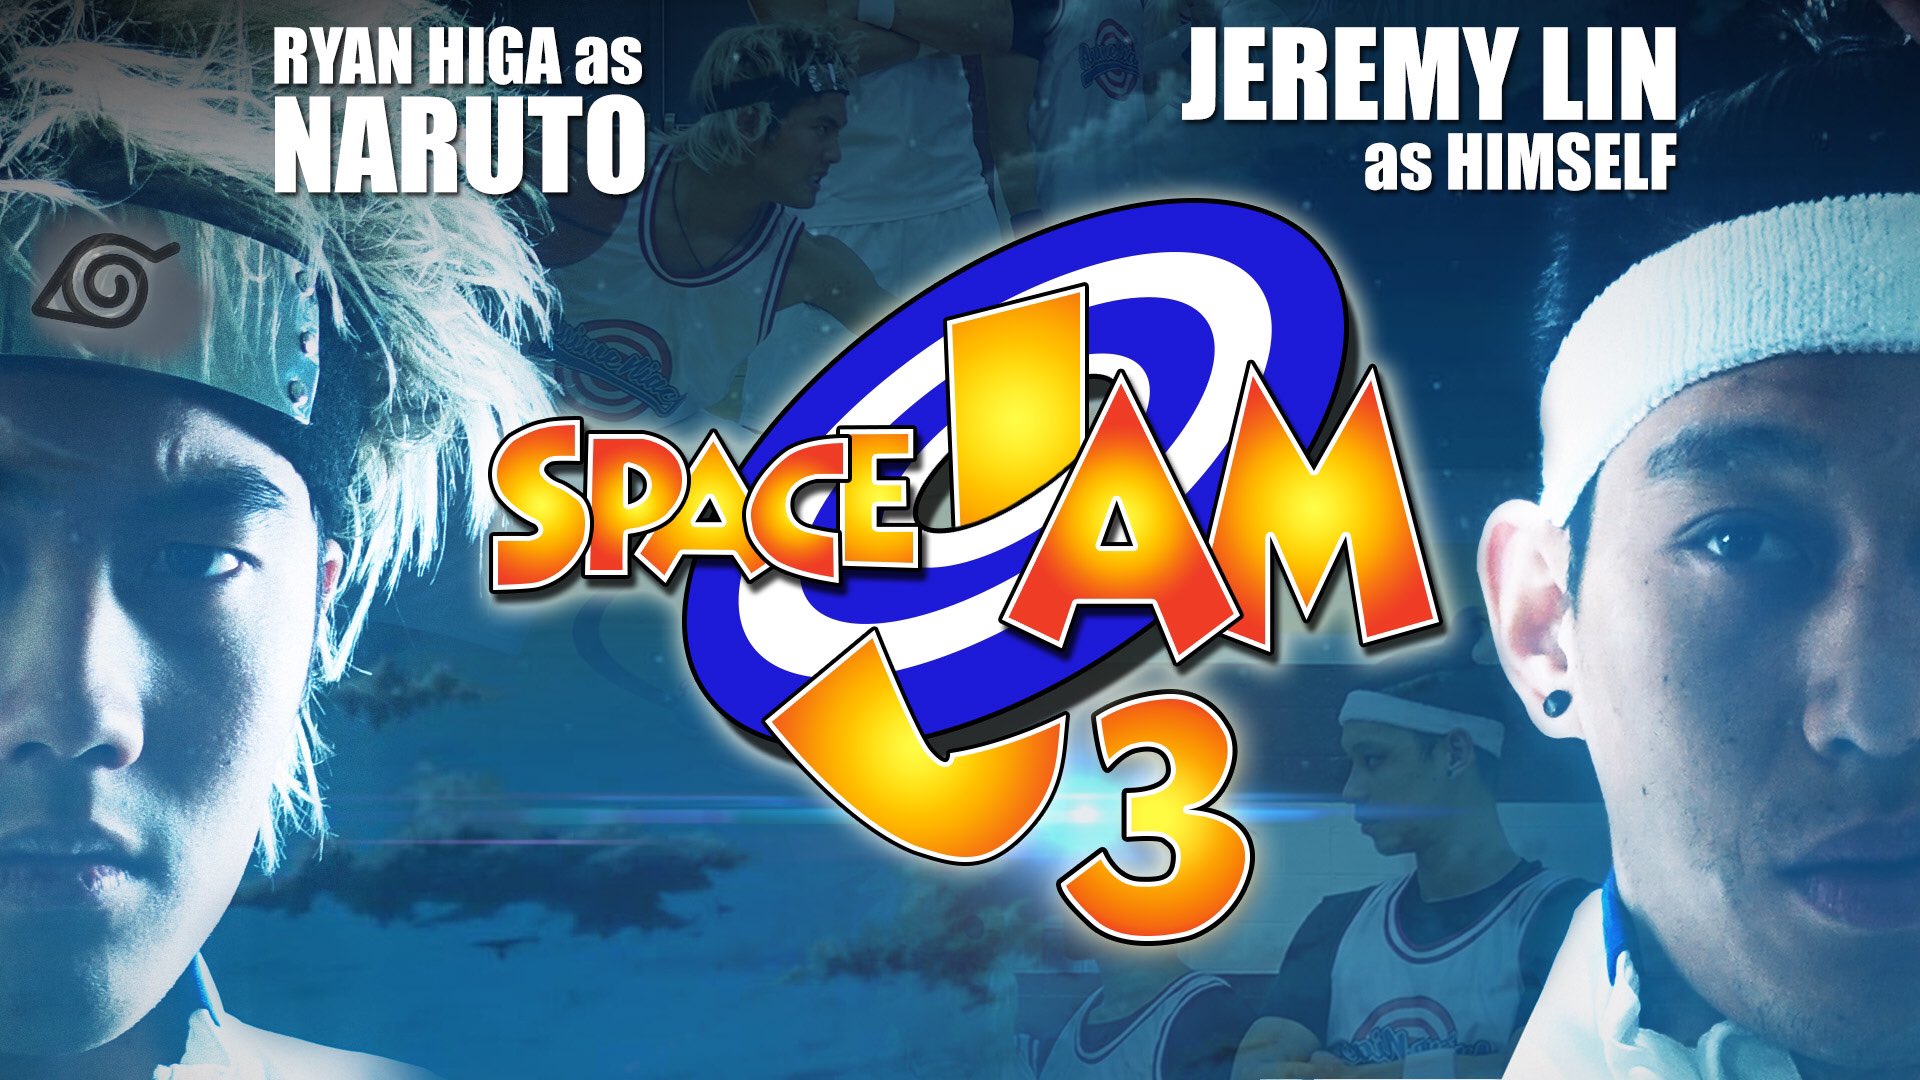 Jeremy Lin vedette de Space Jam… 3